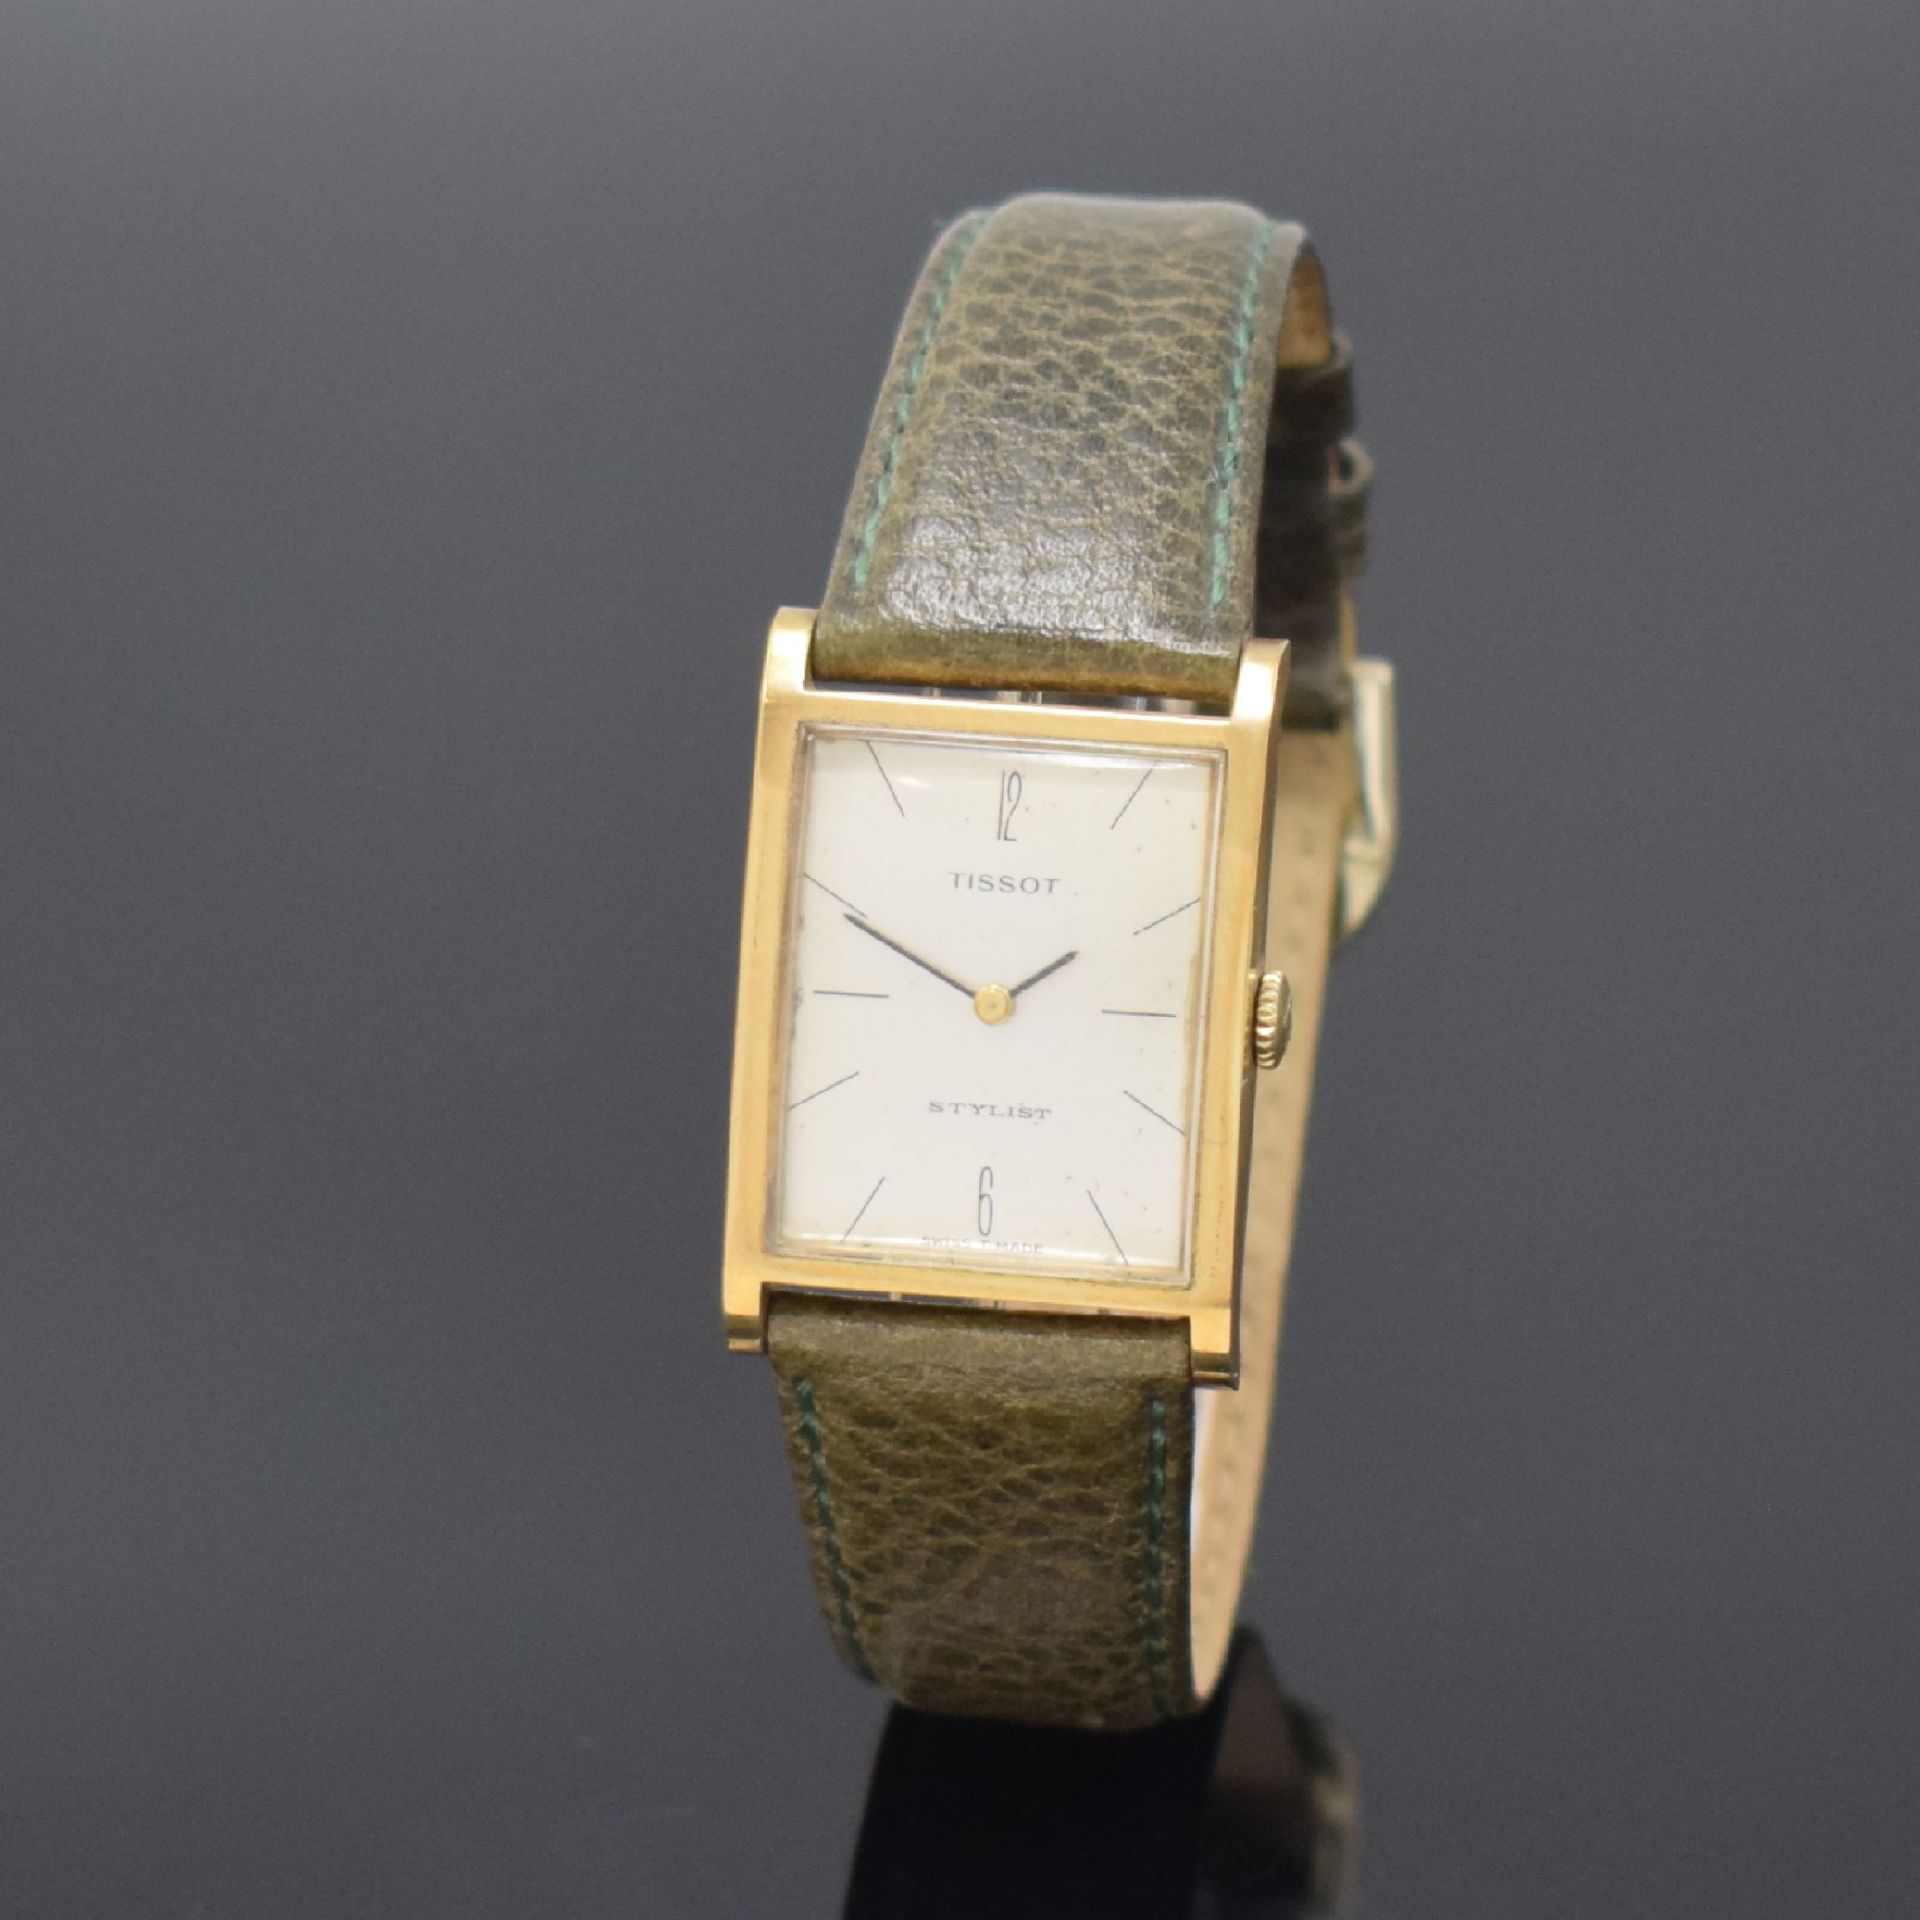 TISSOT Stylist Armbanduhr in GG 585/000, Schweiz um 1965,